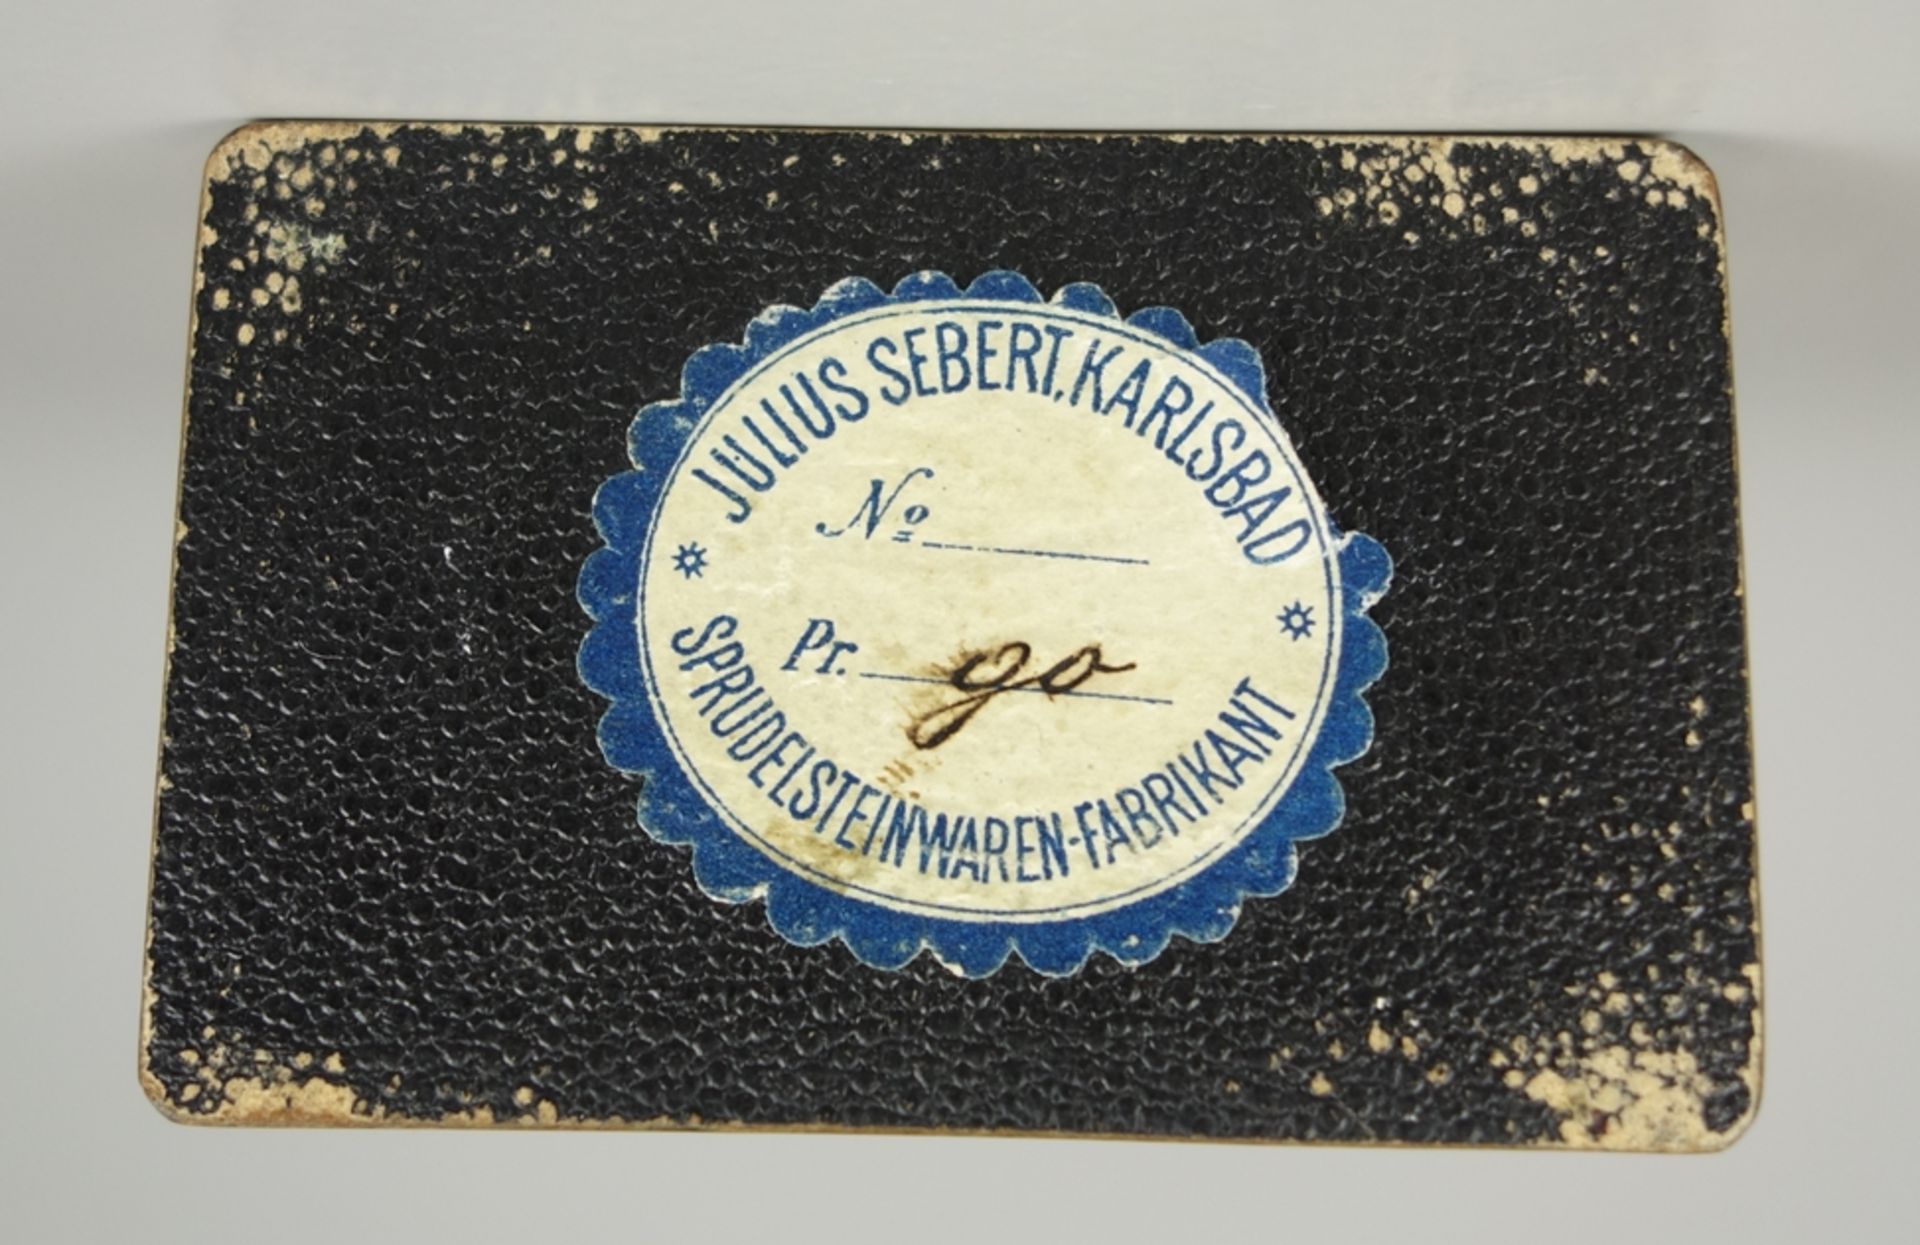 Rare pisolite stone box, Julius Sebert, Karlsbad, around 1890 - Image 3 of 3